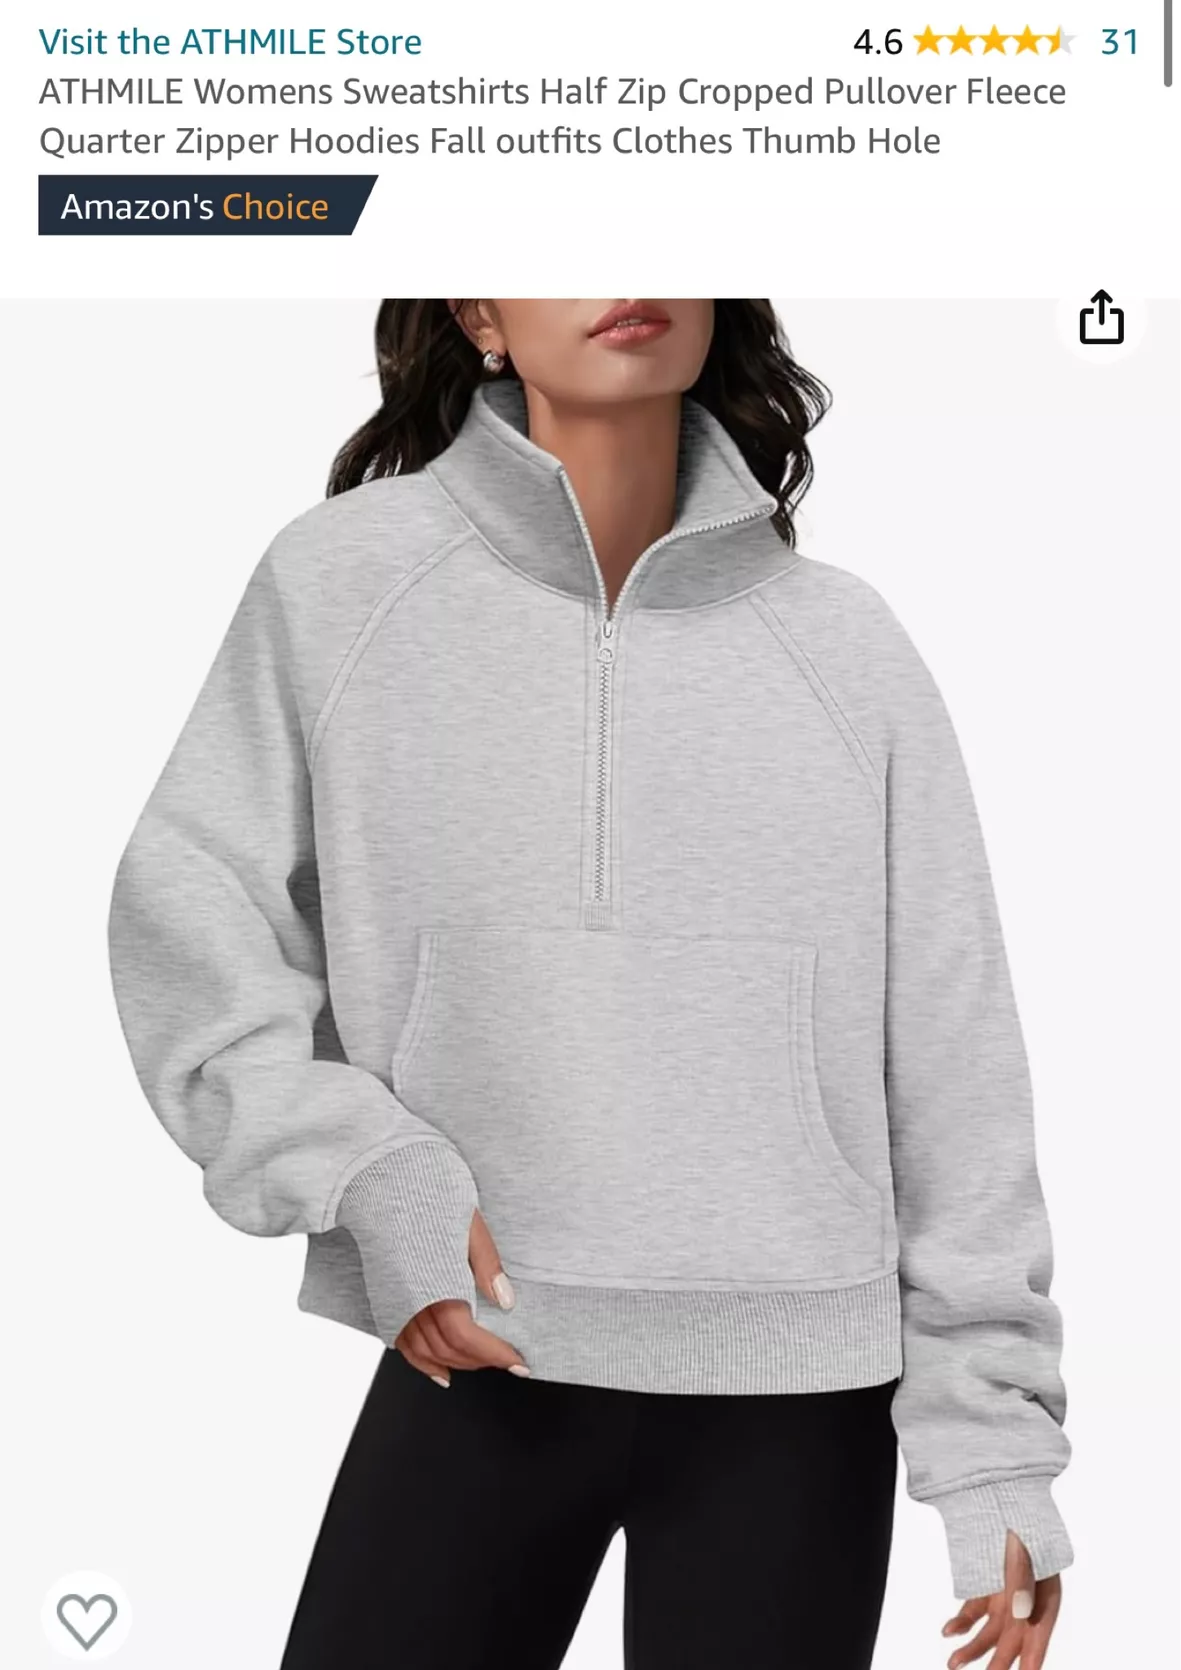  Womens Sweatshirts Half Zip Cropped Pullover Fleece